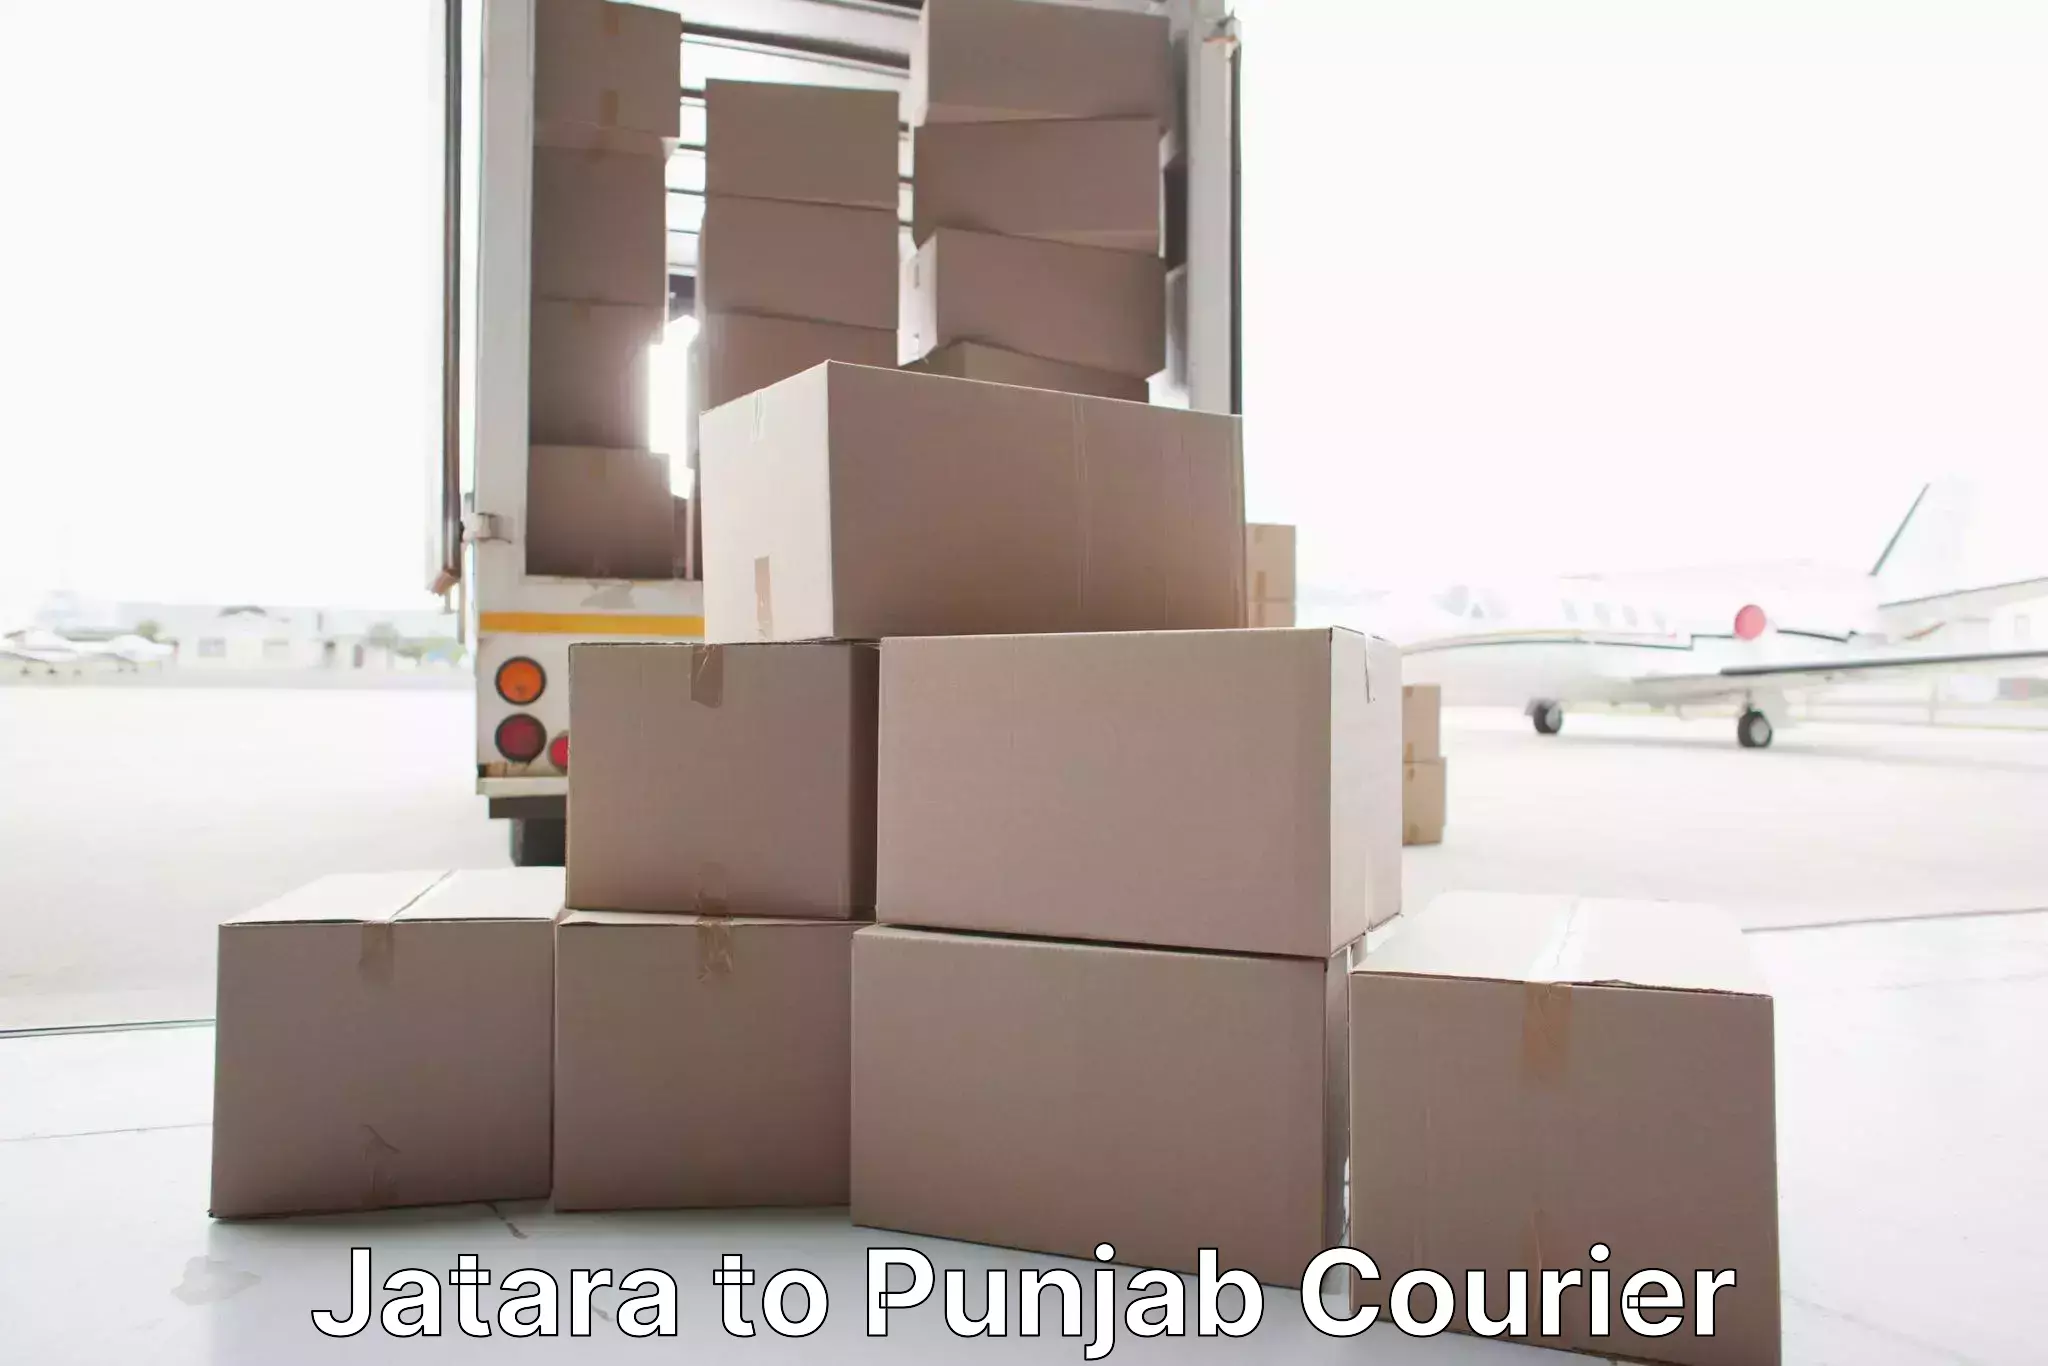 Furniture moving plans Jatara to Punjab